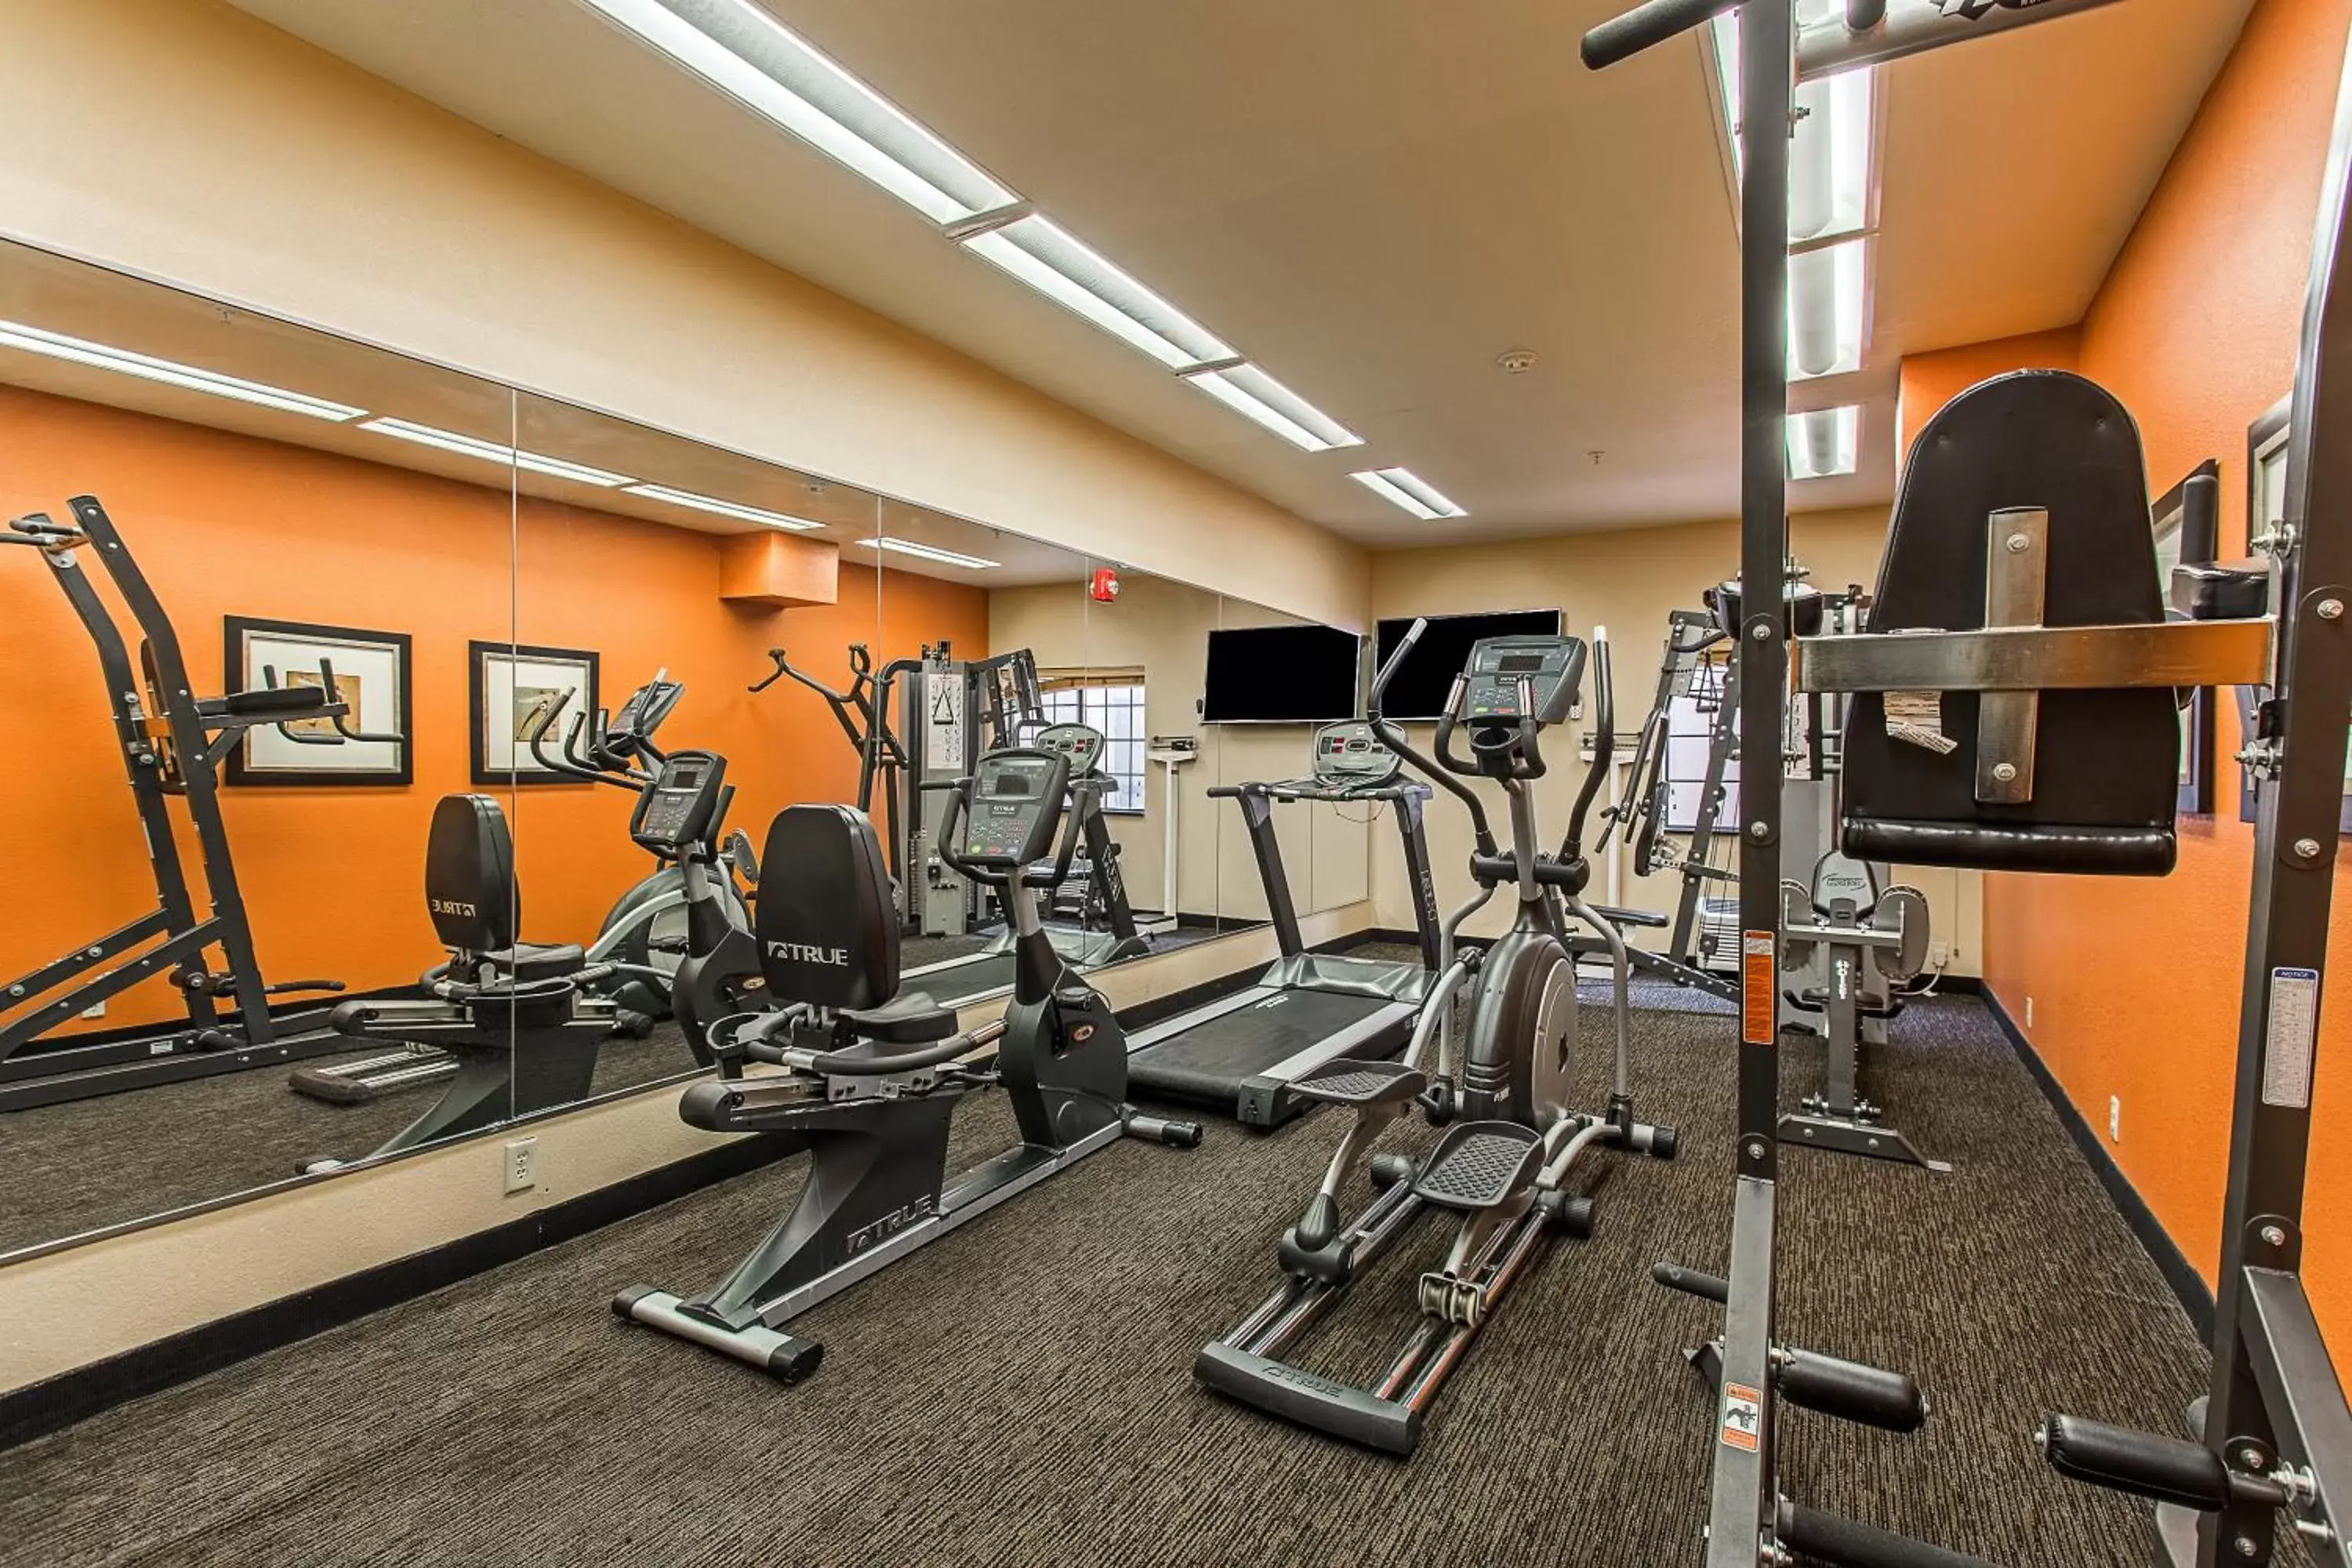 Fitness centre/facilities, Fitness Center/Facilities in Hotel Ruidoso